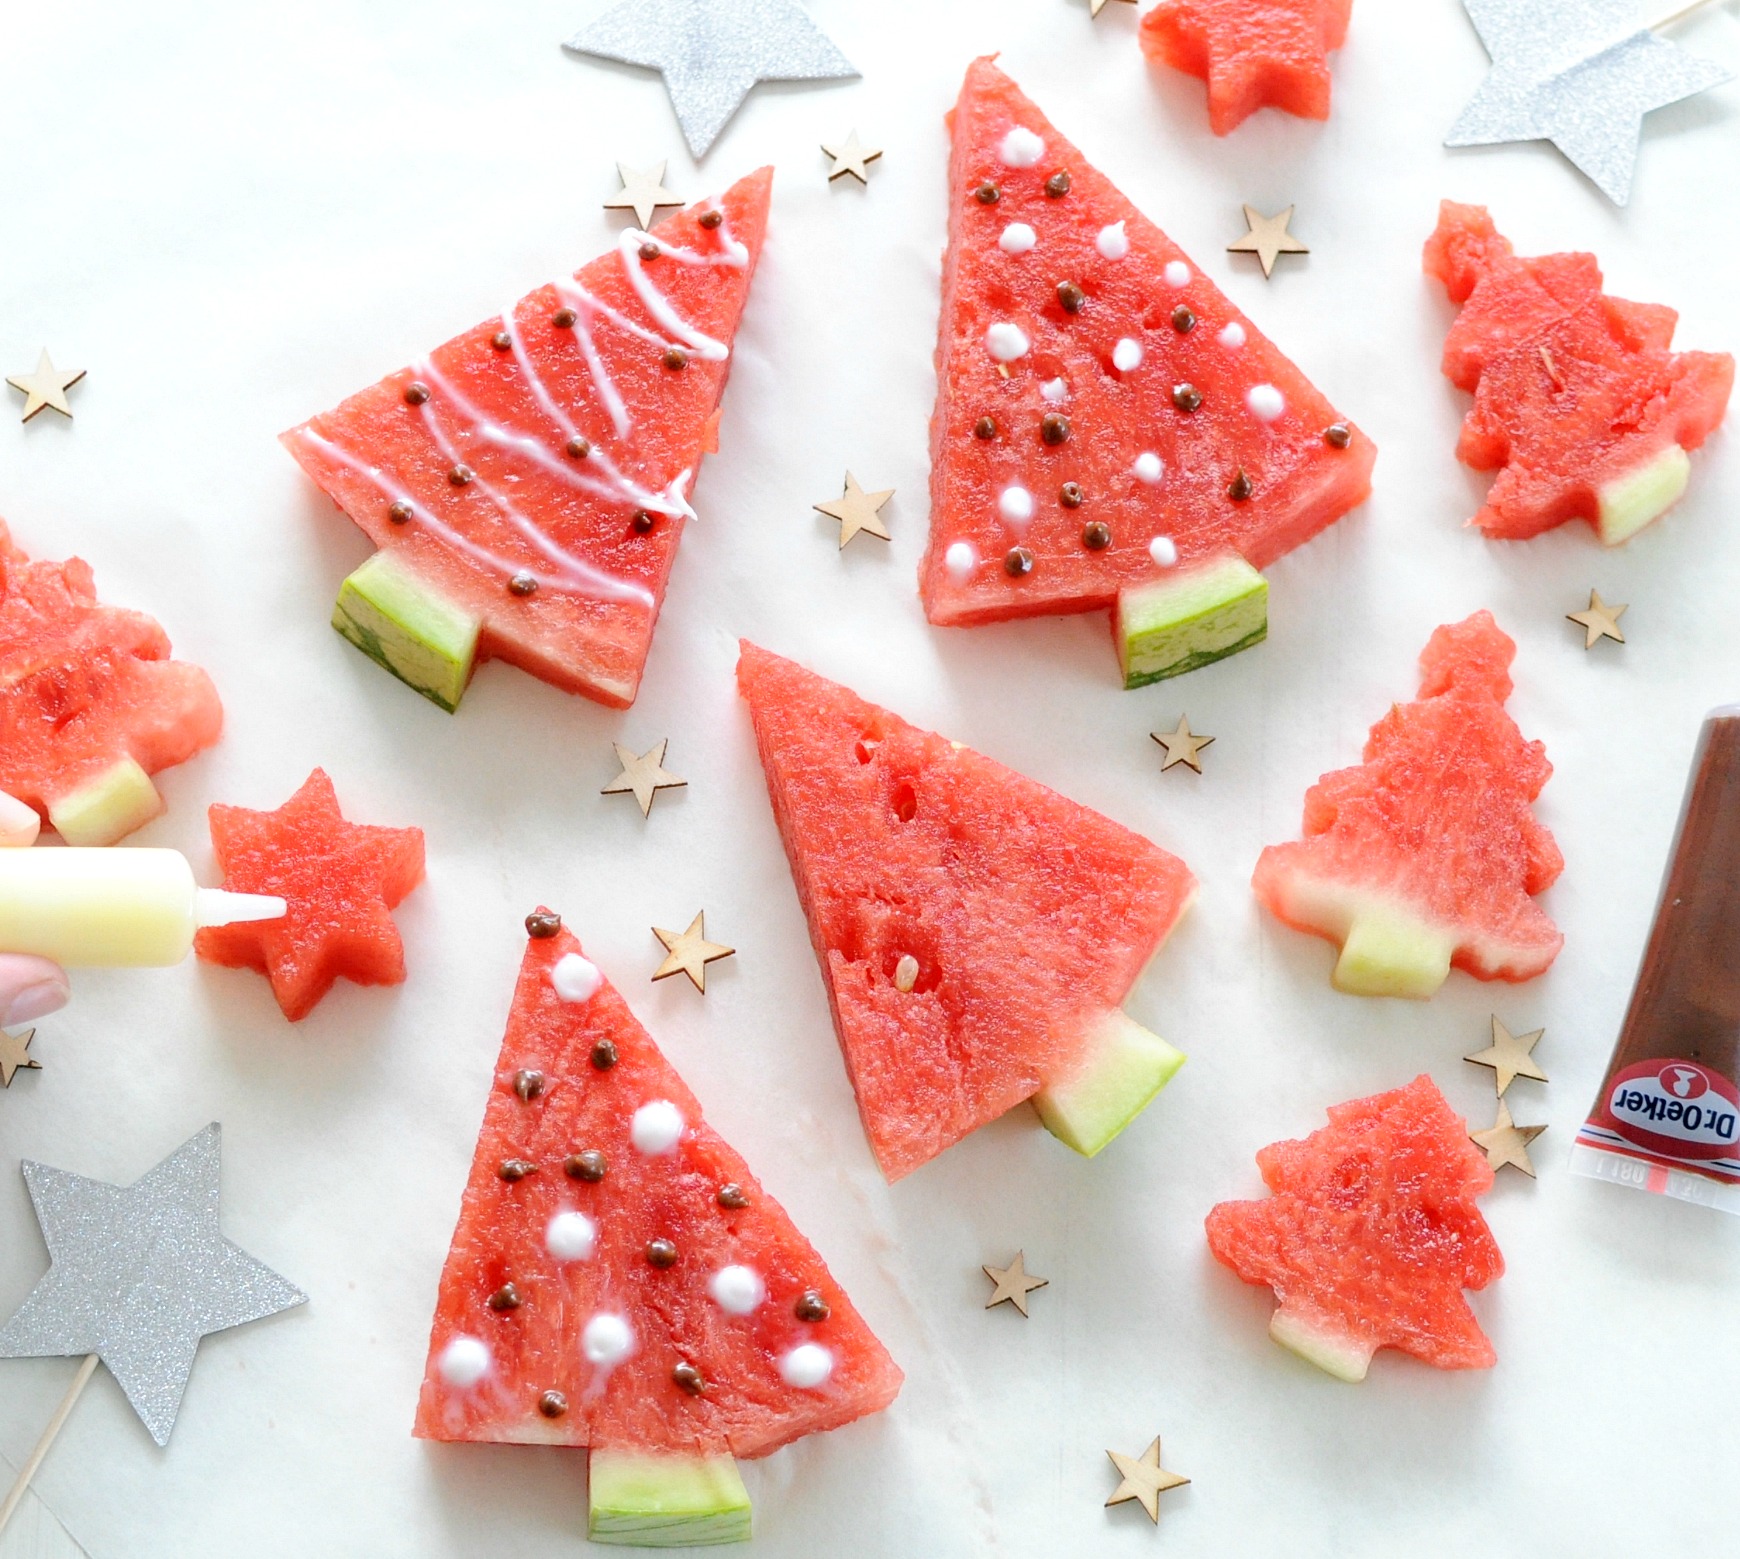 inkt Tochi boom liefde Kerstboompjes van watermeloen maken: verfrissende kerstsnack! -  Christmaholic.nl